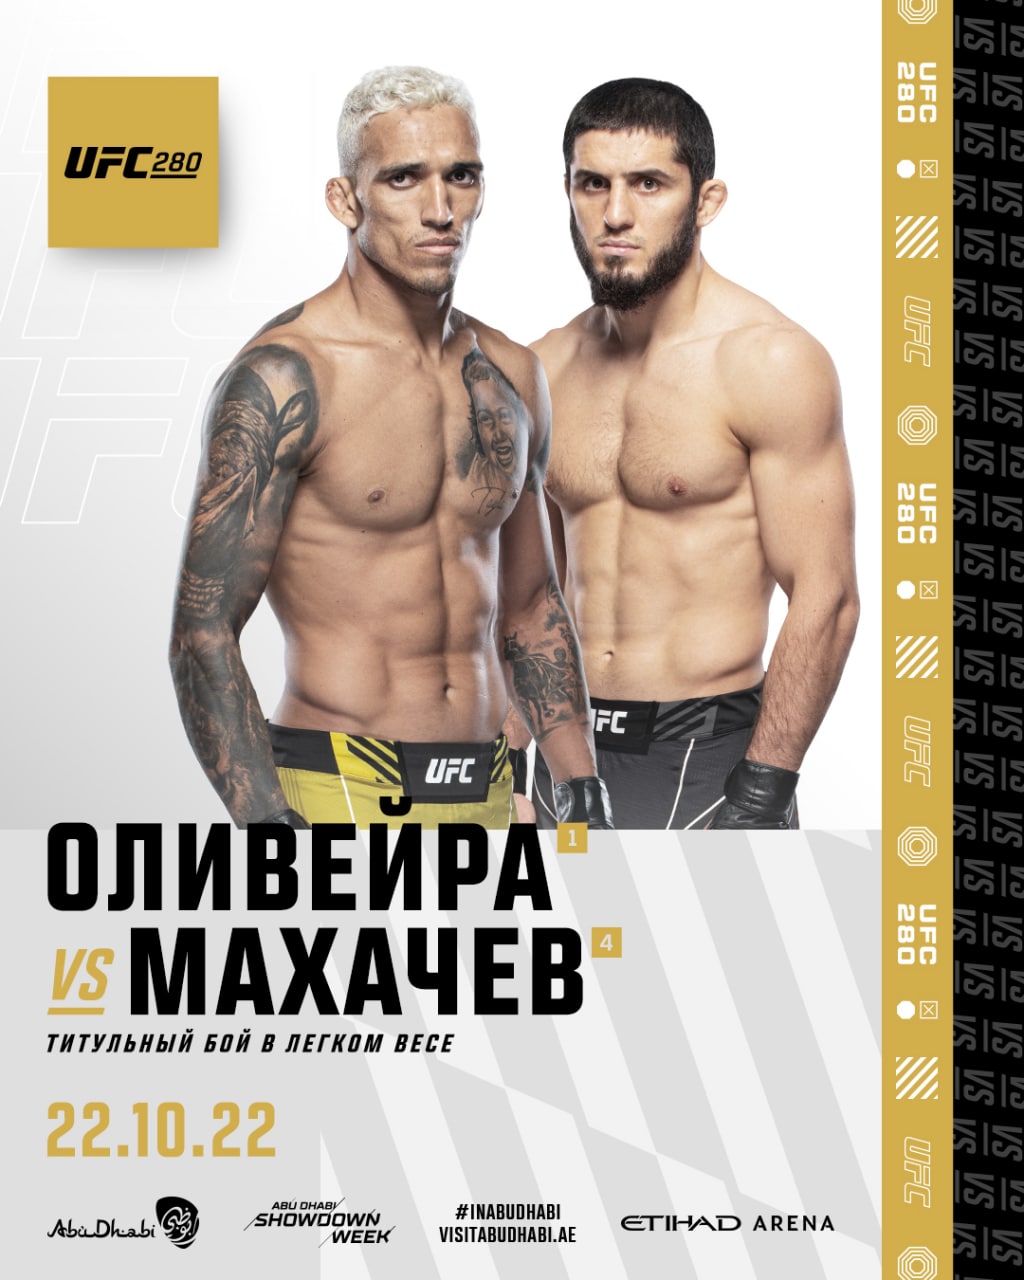 Foto: “UFC Russia”